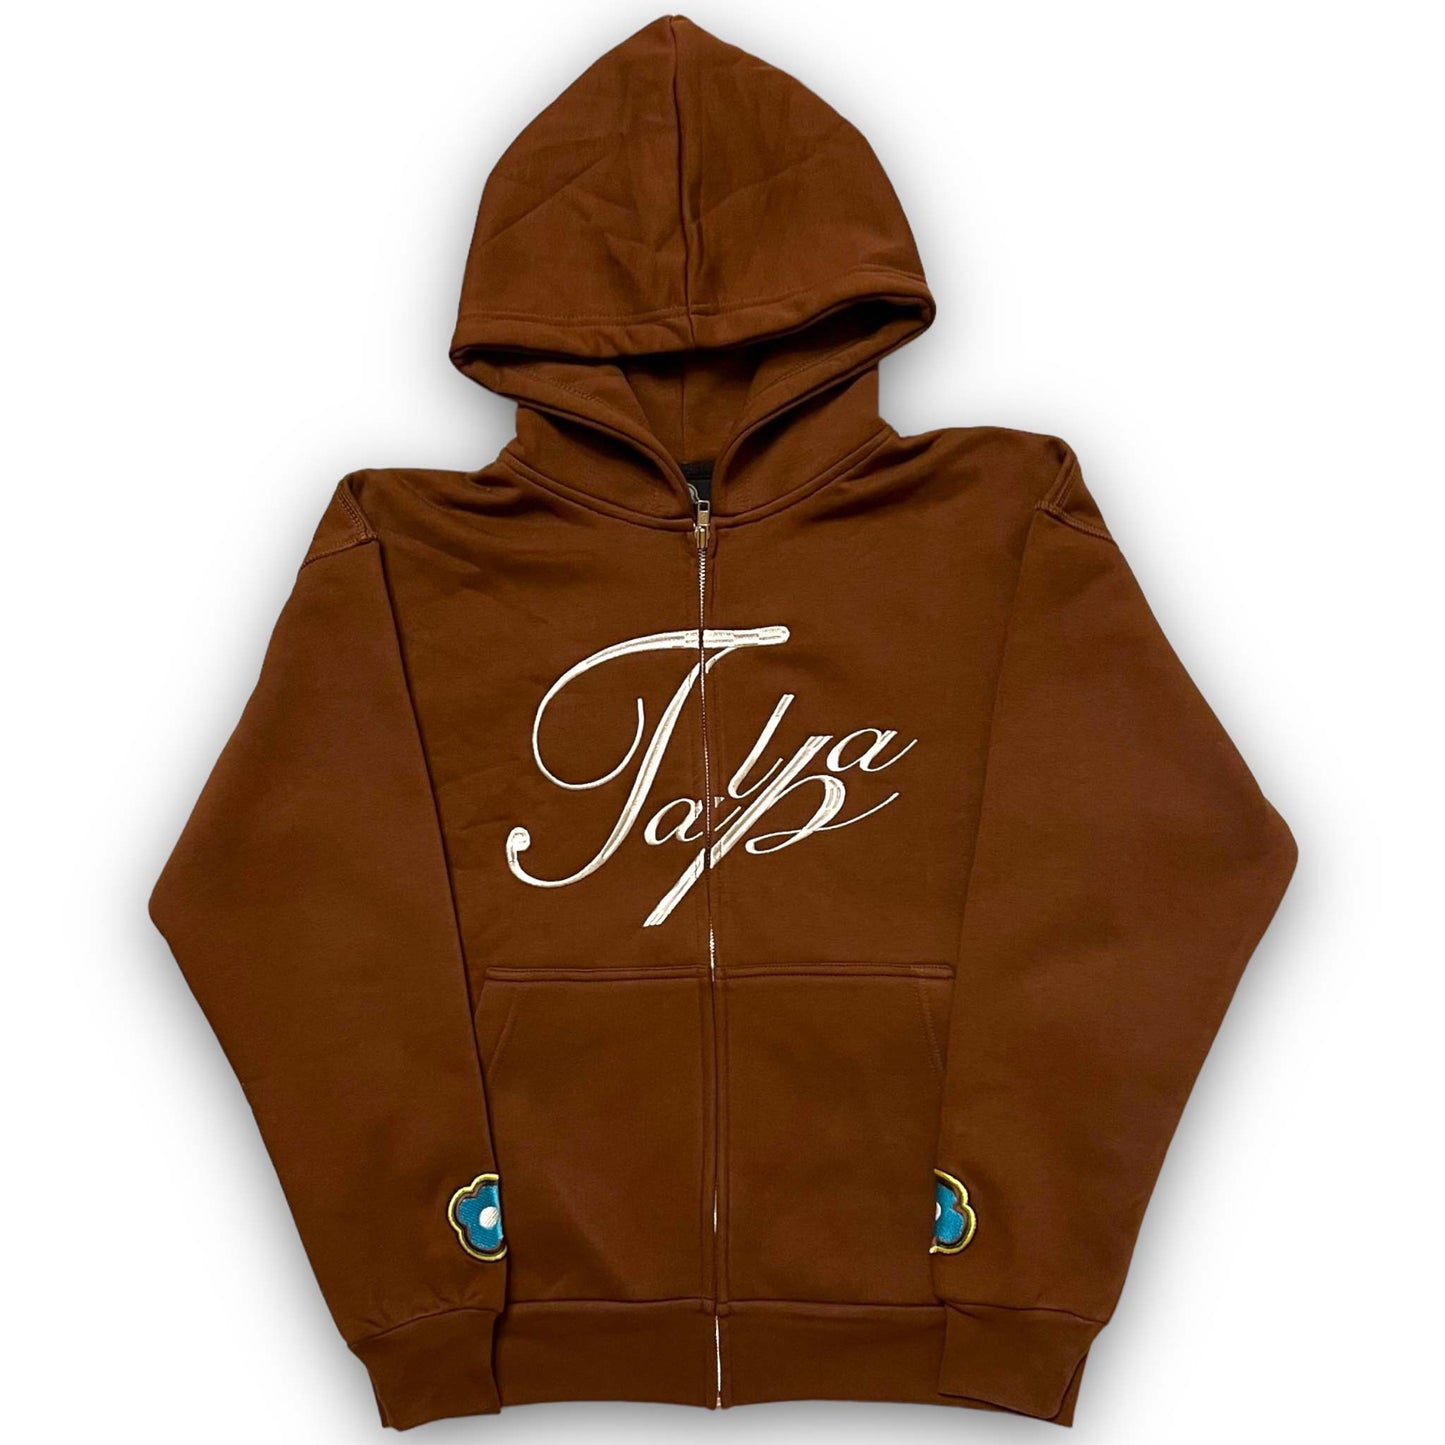 Brown zip hoodie – Talpa marque de vêtements française